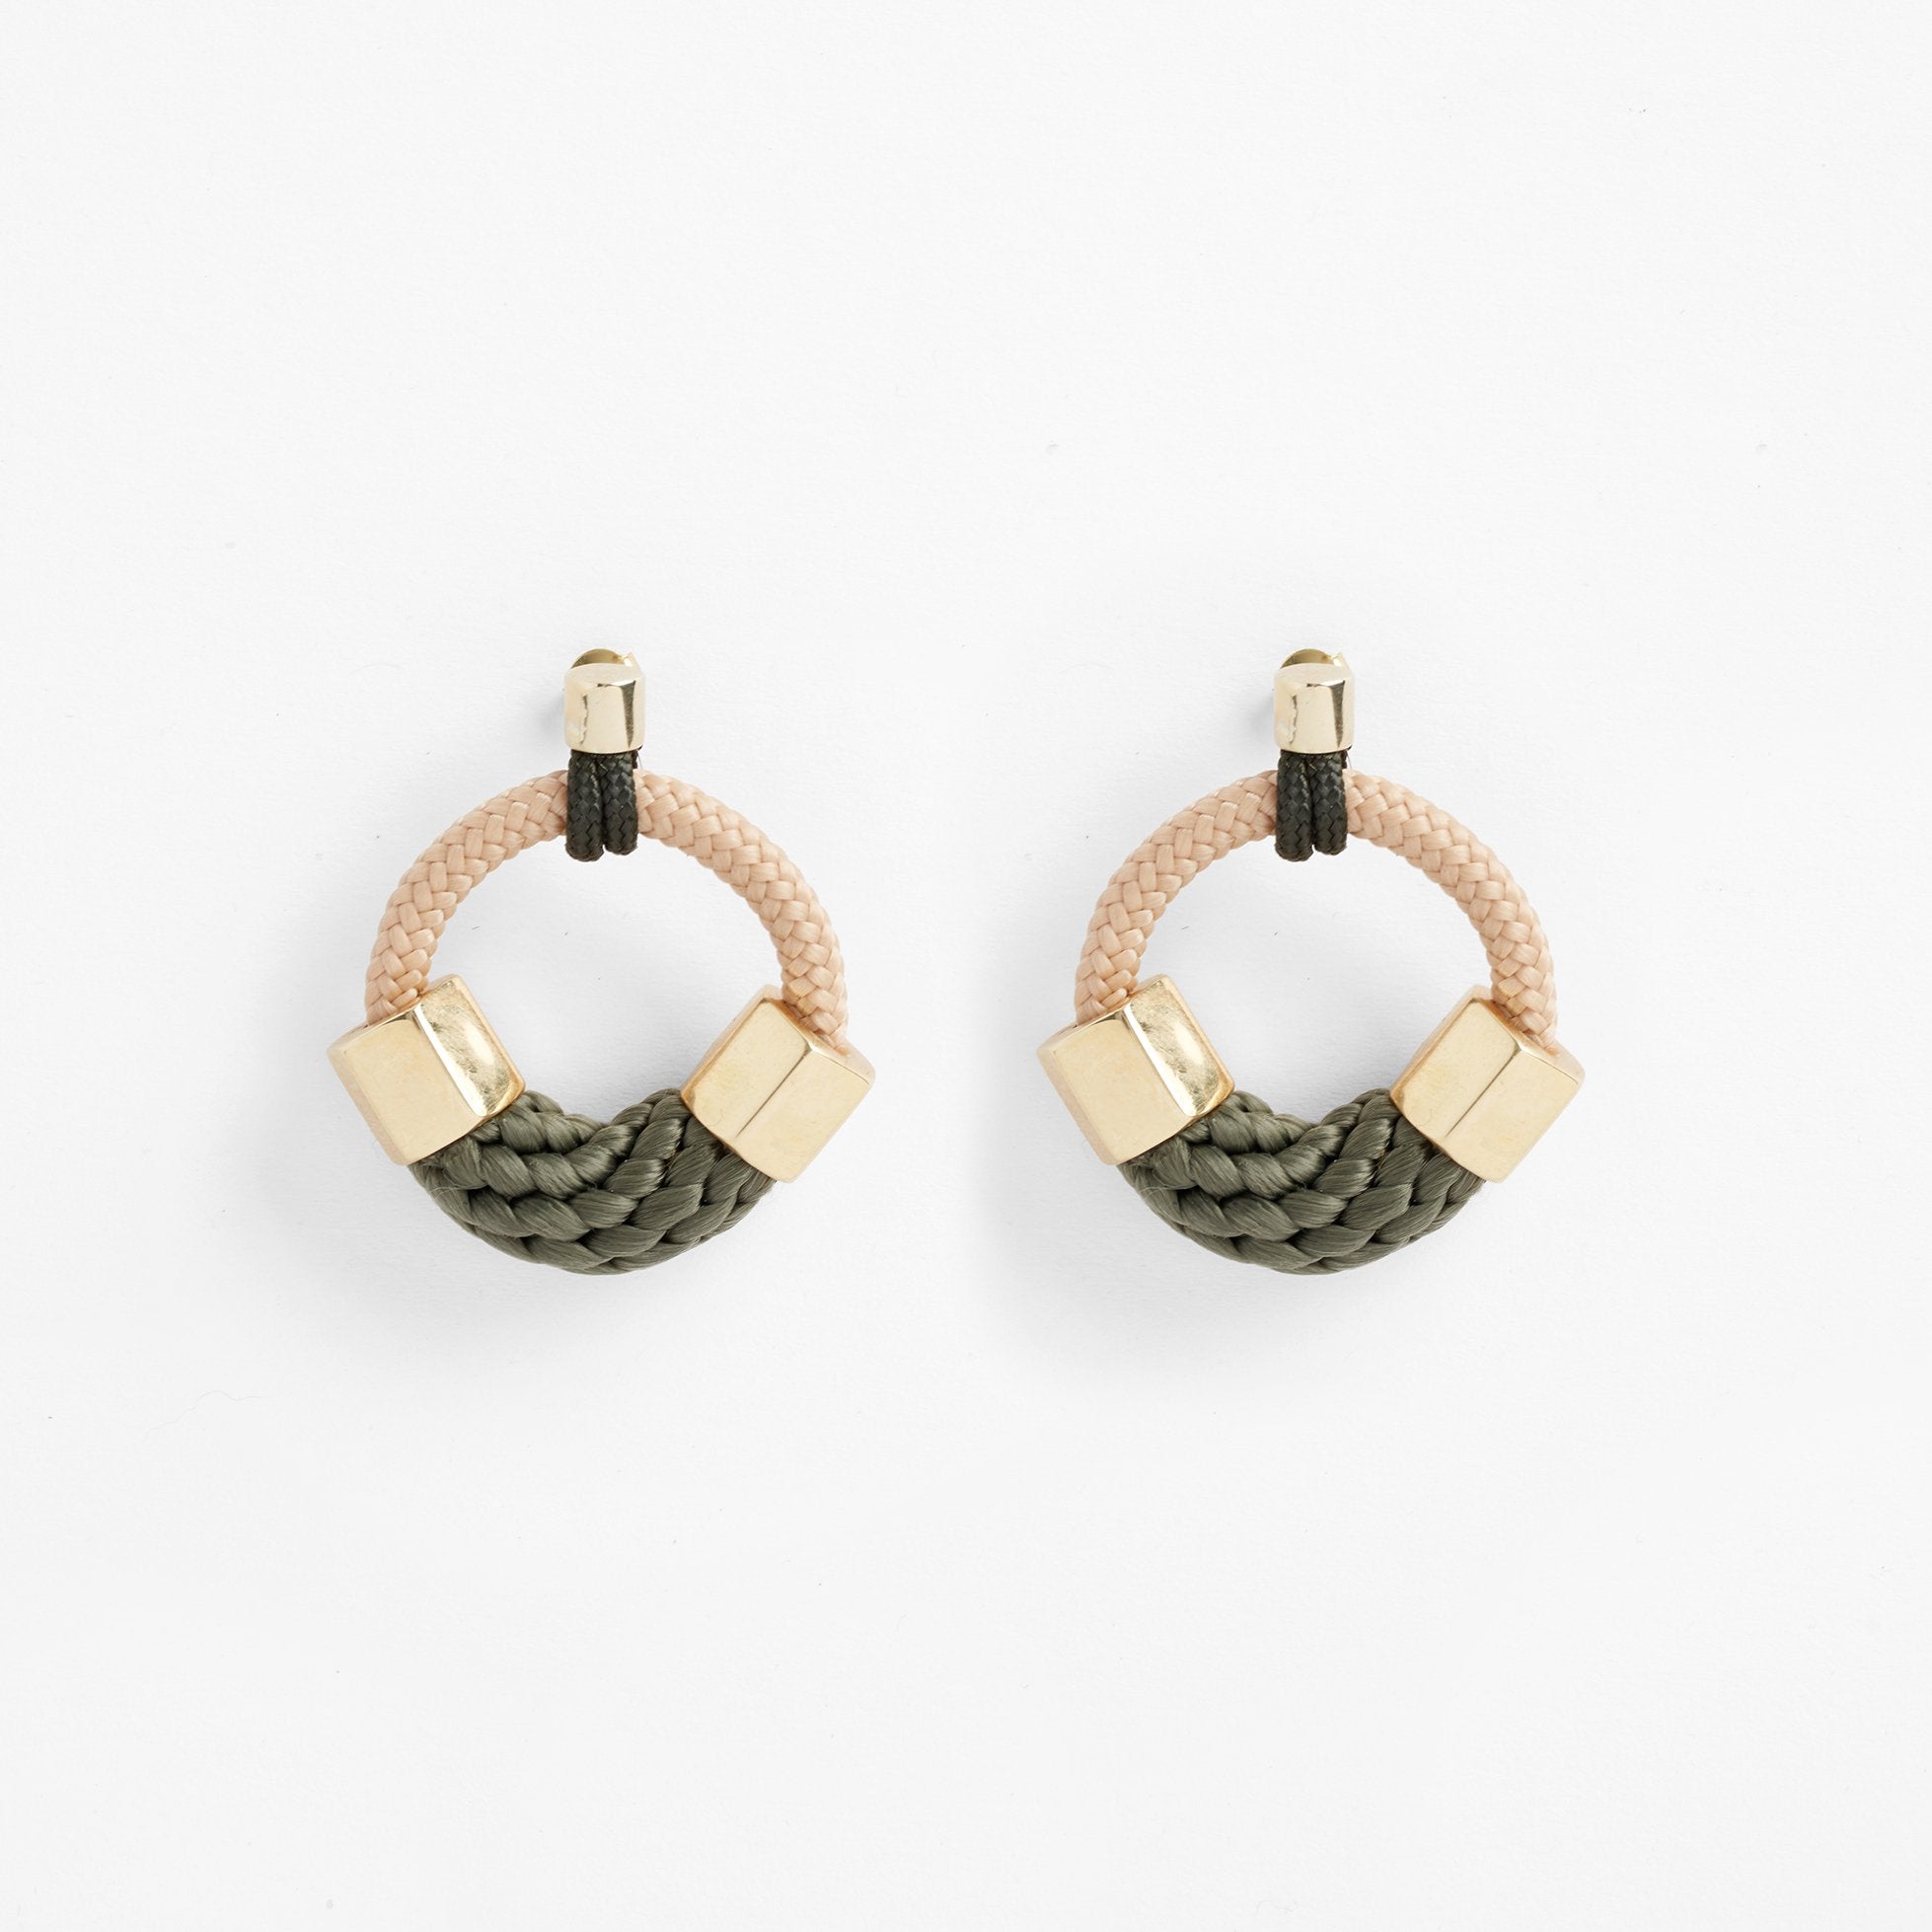 Ithaca earrings